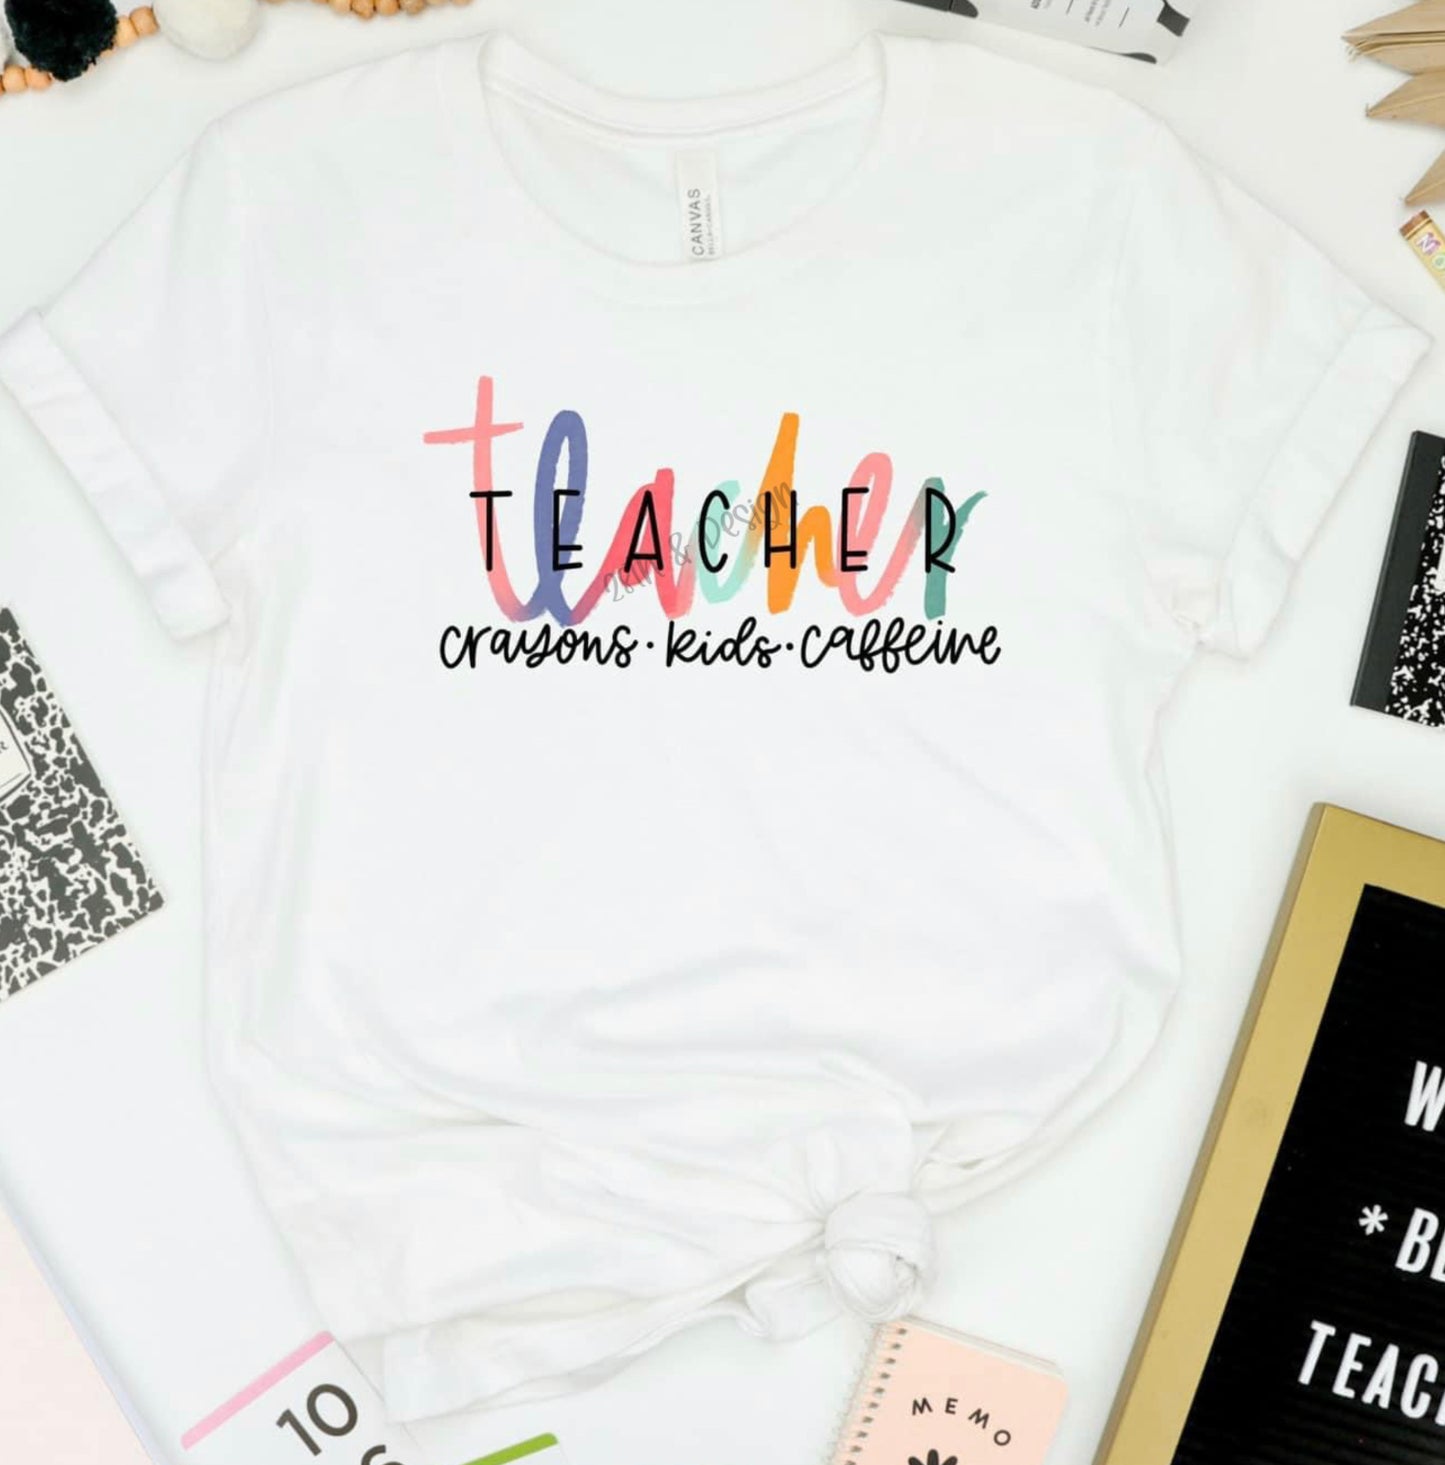 Teacher - crayons,kids,caffeine